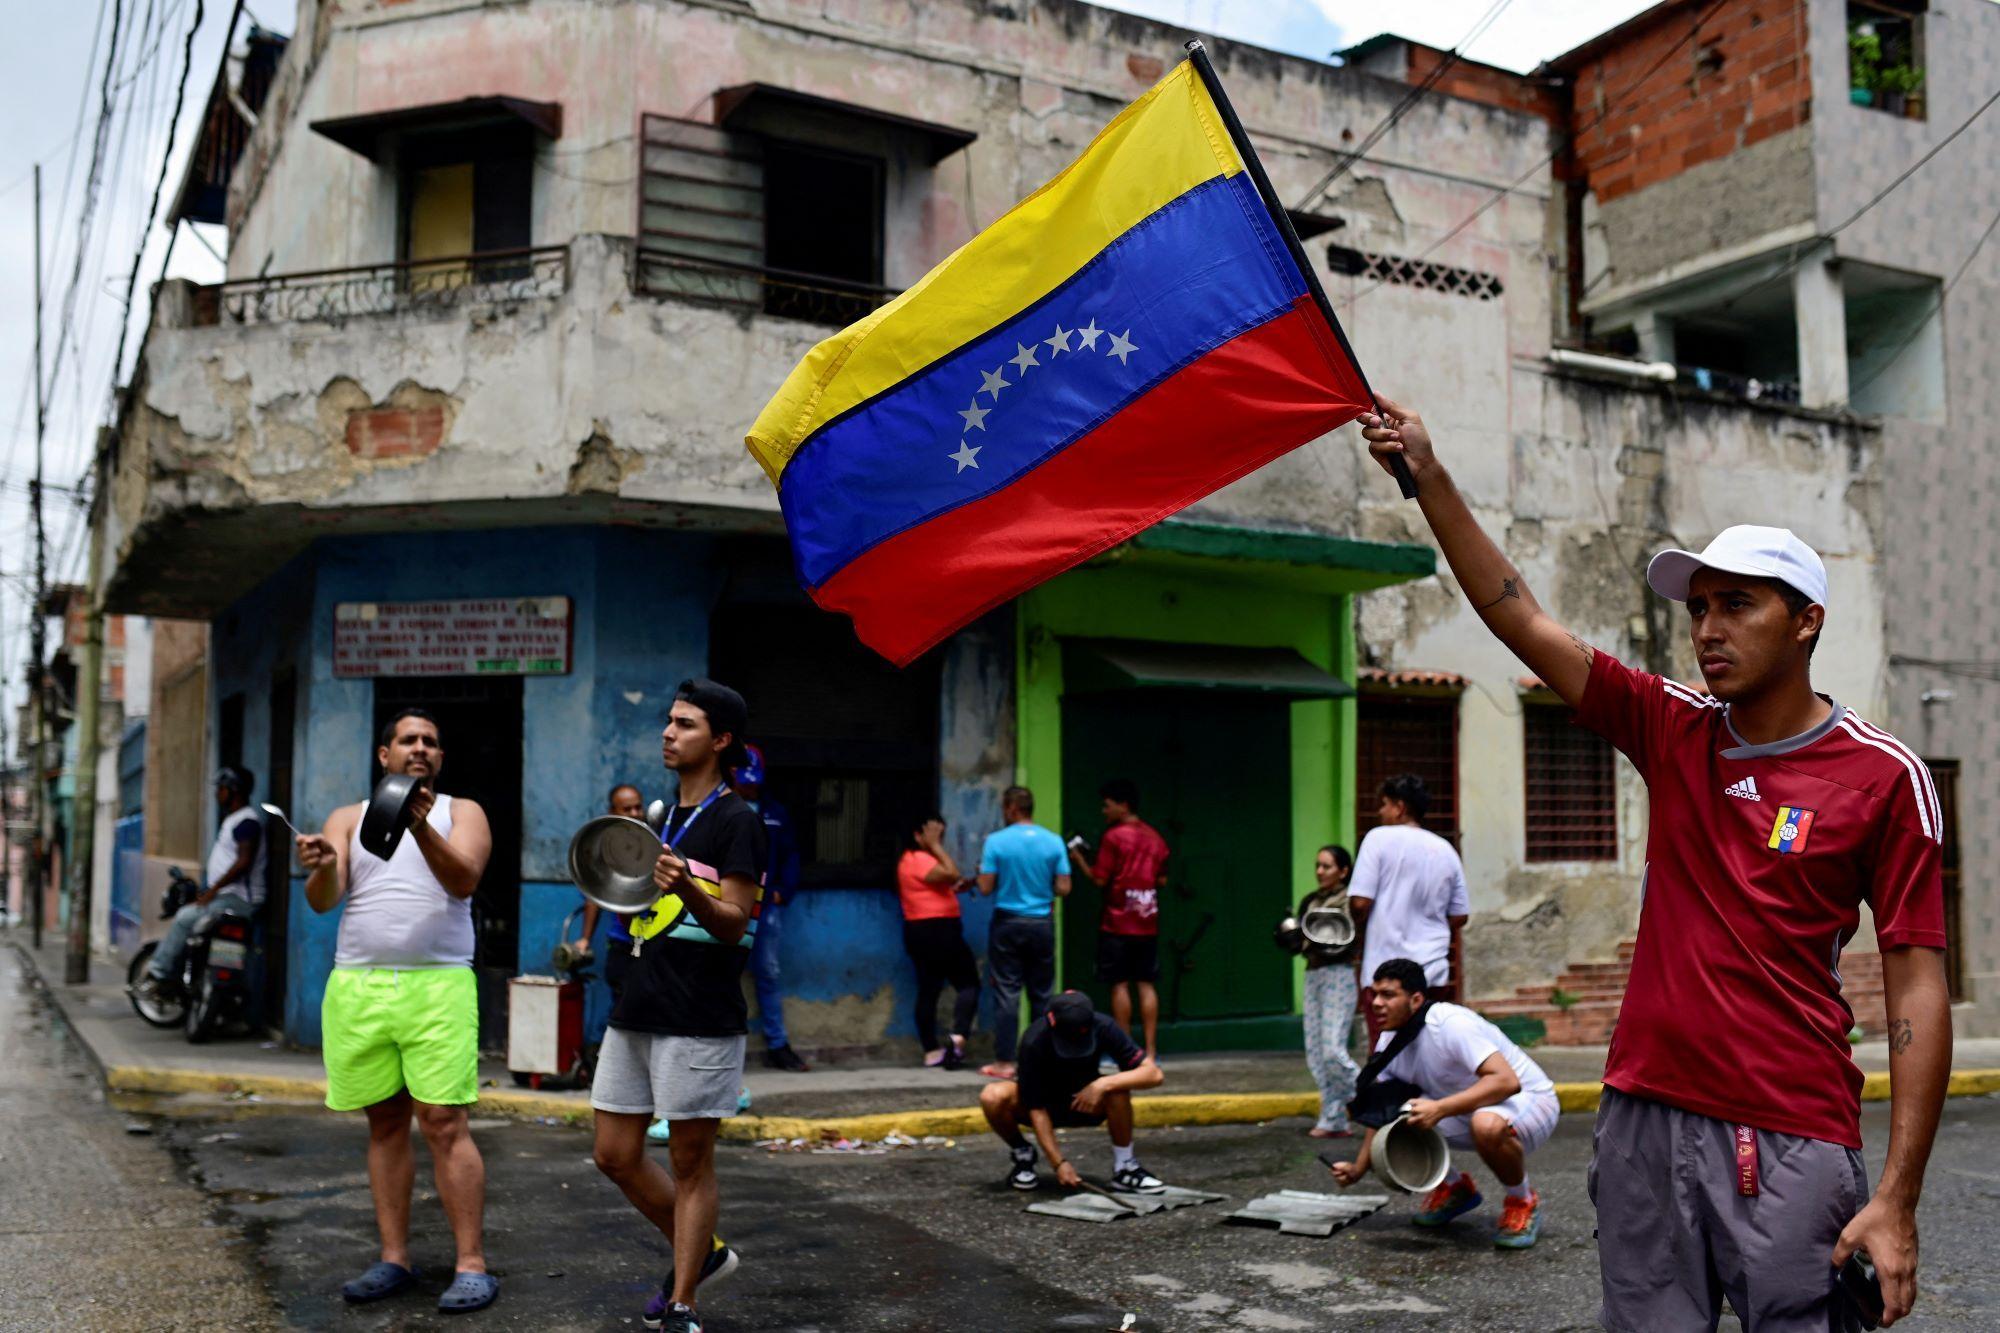 manifestantes en un barrio popular de venezuela